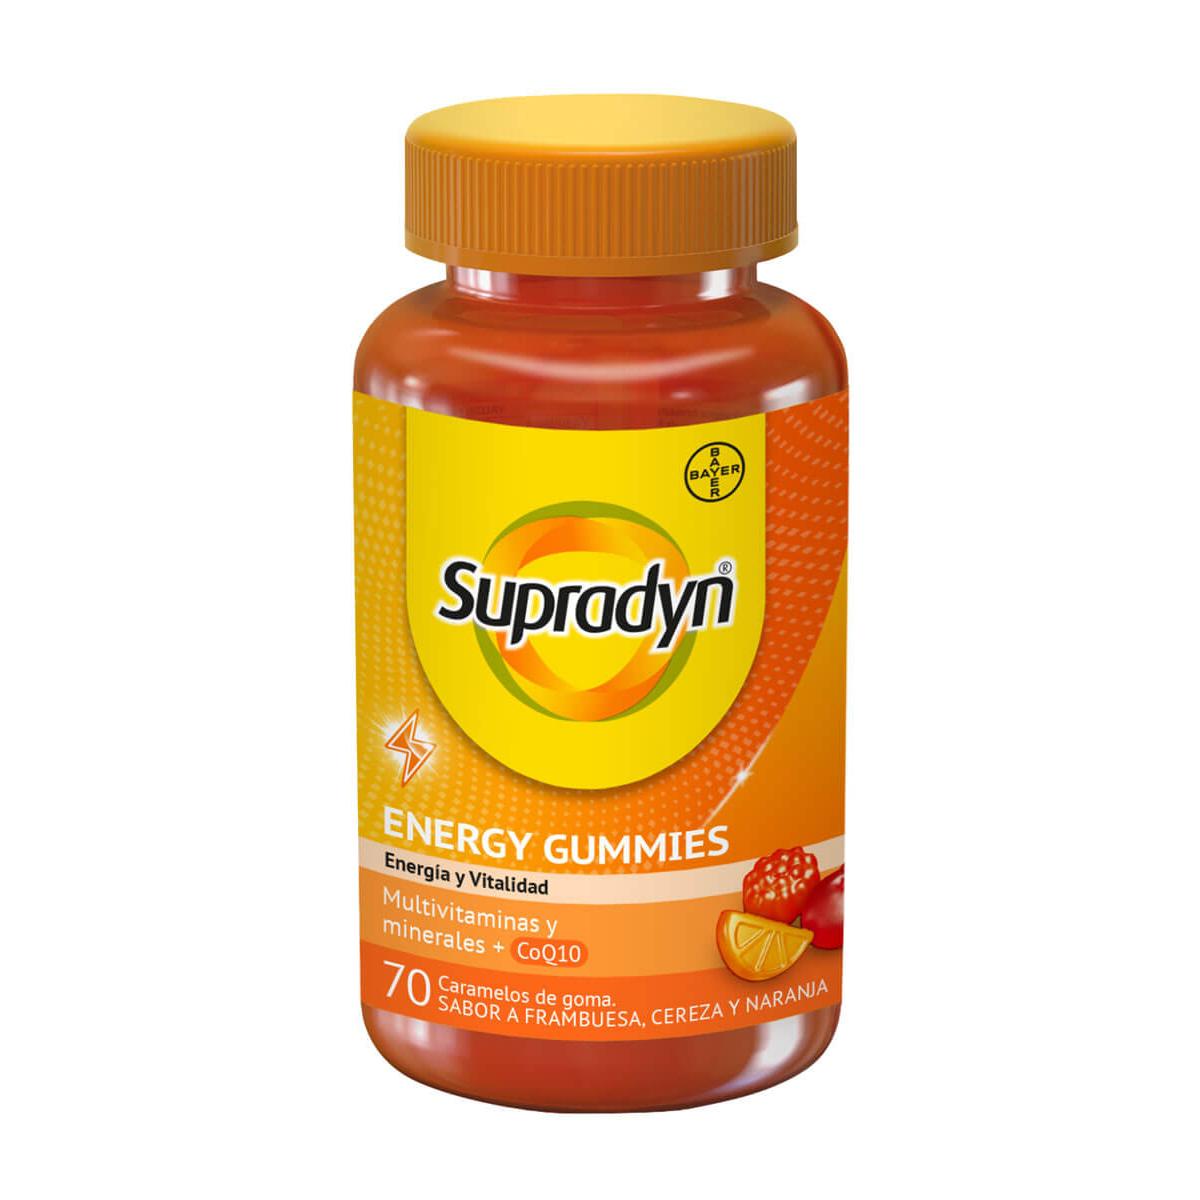 Supradyn - Supradyn® energy gummies adultos 70 gominolas